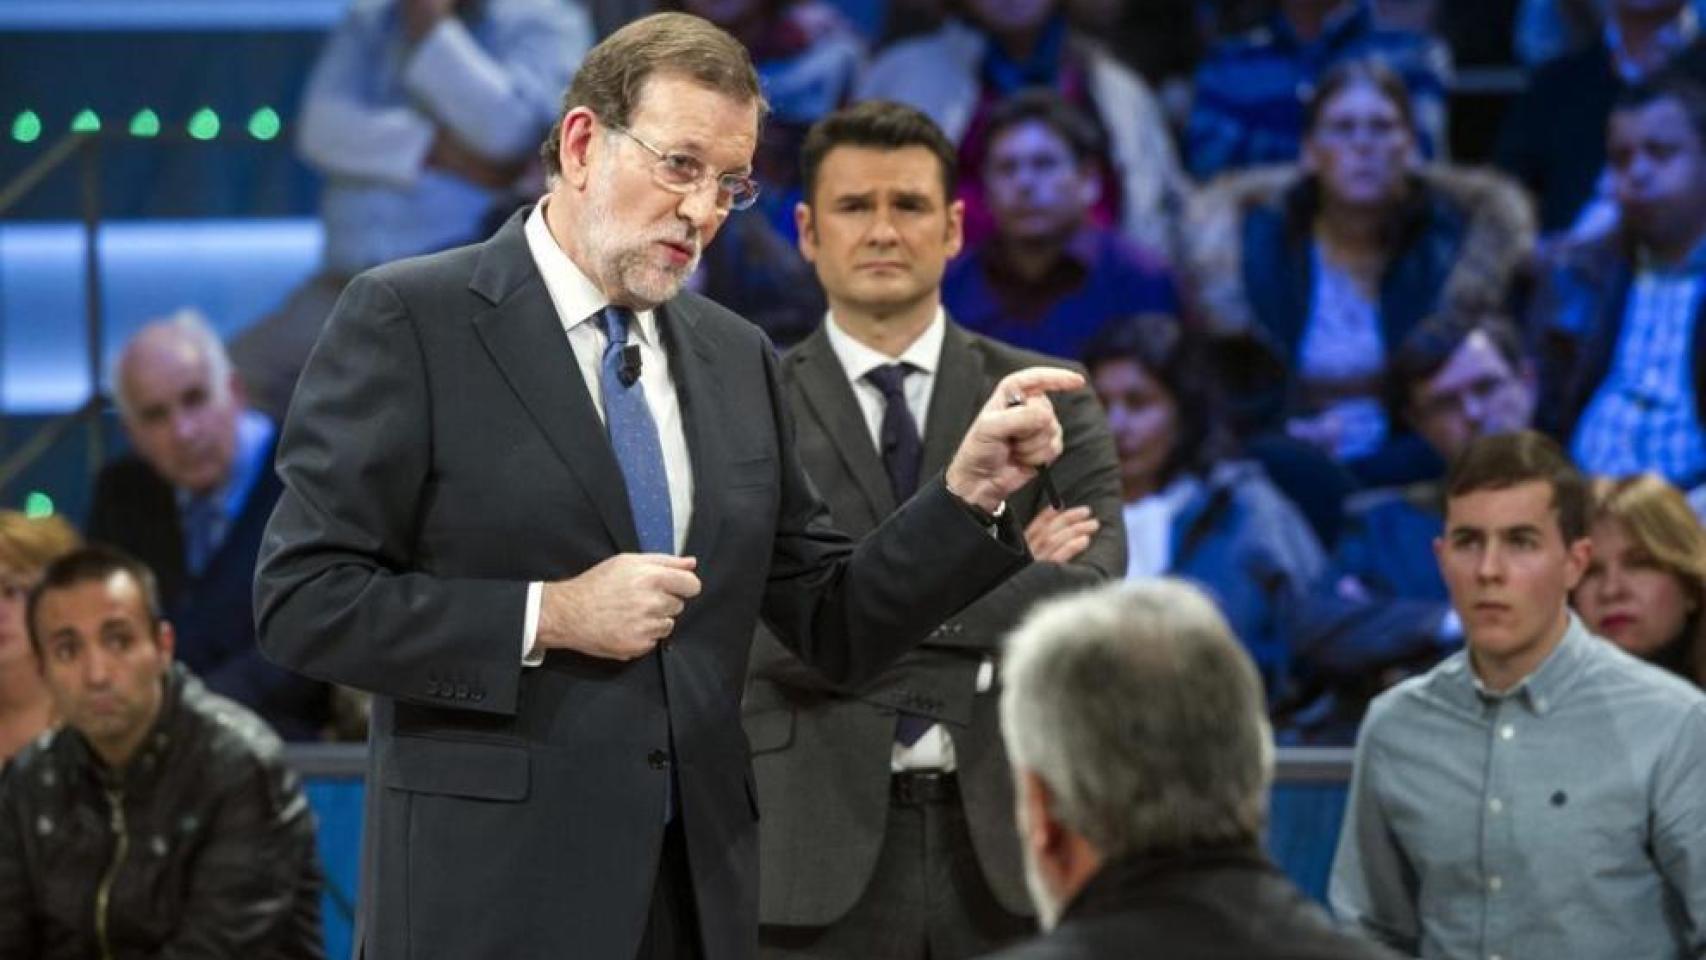 Rajoy no quiere enfrentarse a las familias de 'laSexta Noche'